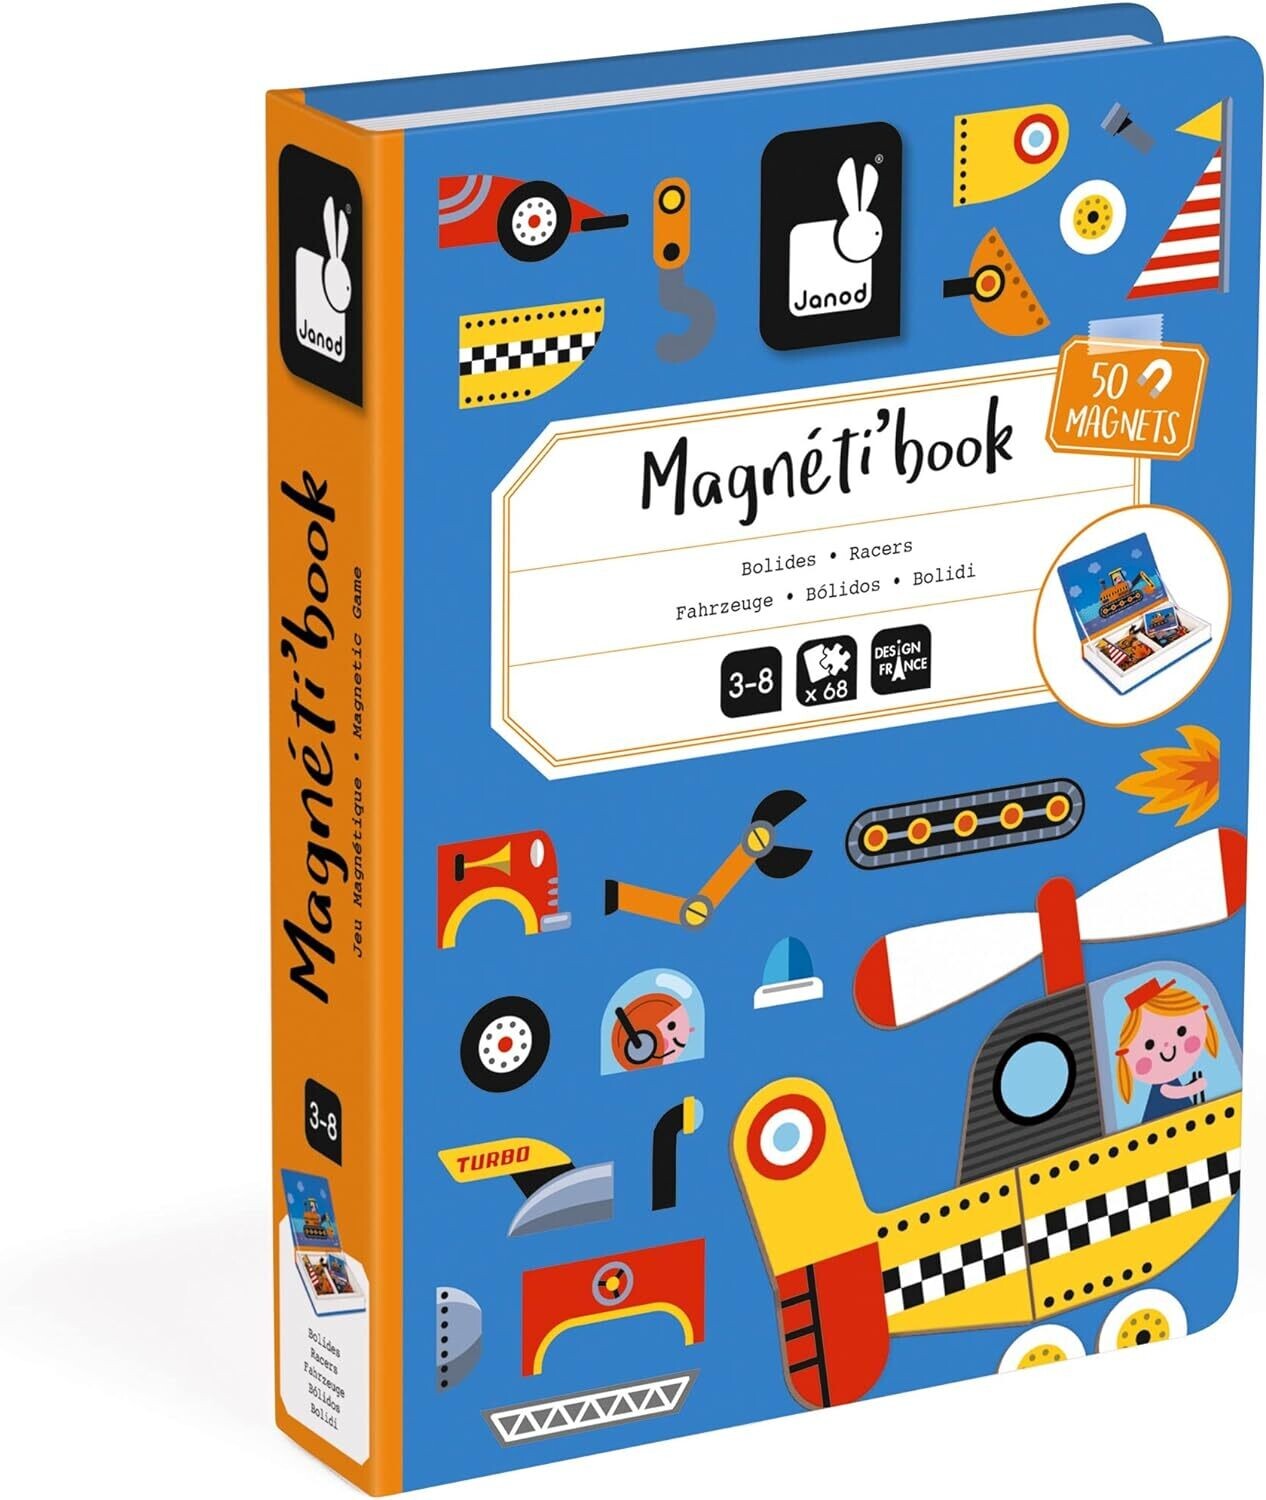 Janod - Magneti&#39;Book Bolides - Jeu Educatif livre magnétique 50 Pièces - Apprentissage Motricité Fine et Imagination - Dès 3 Ans